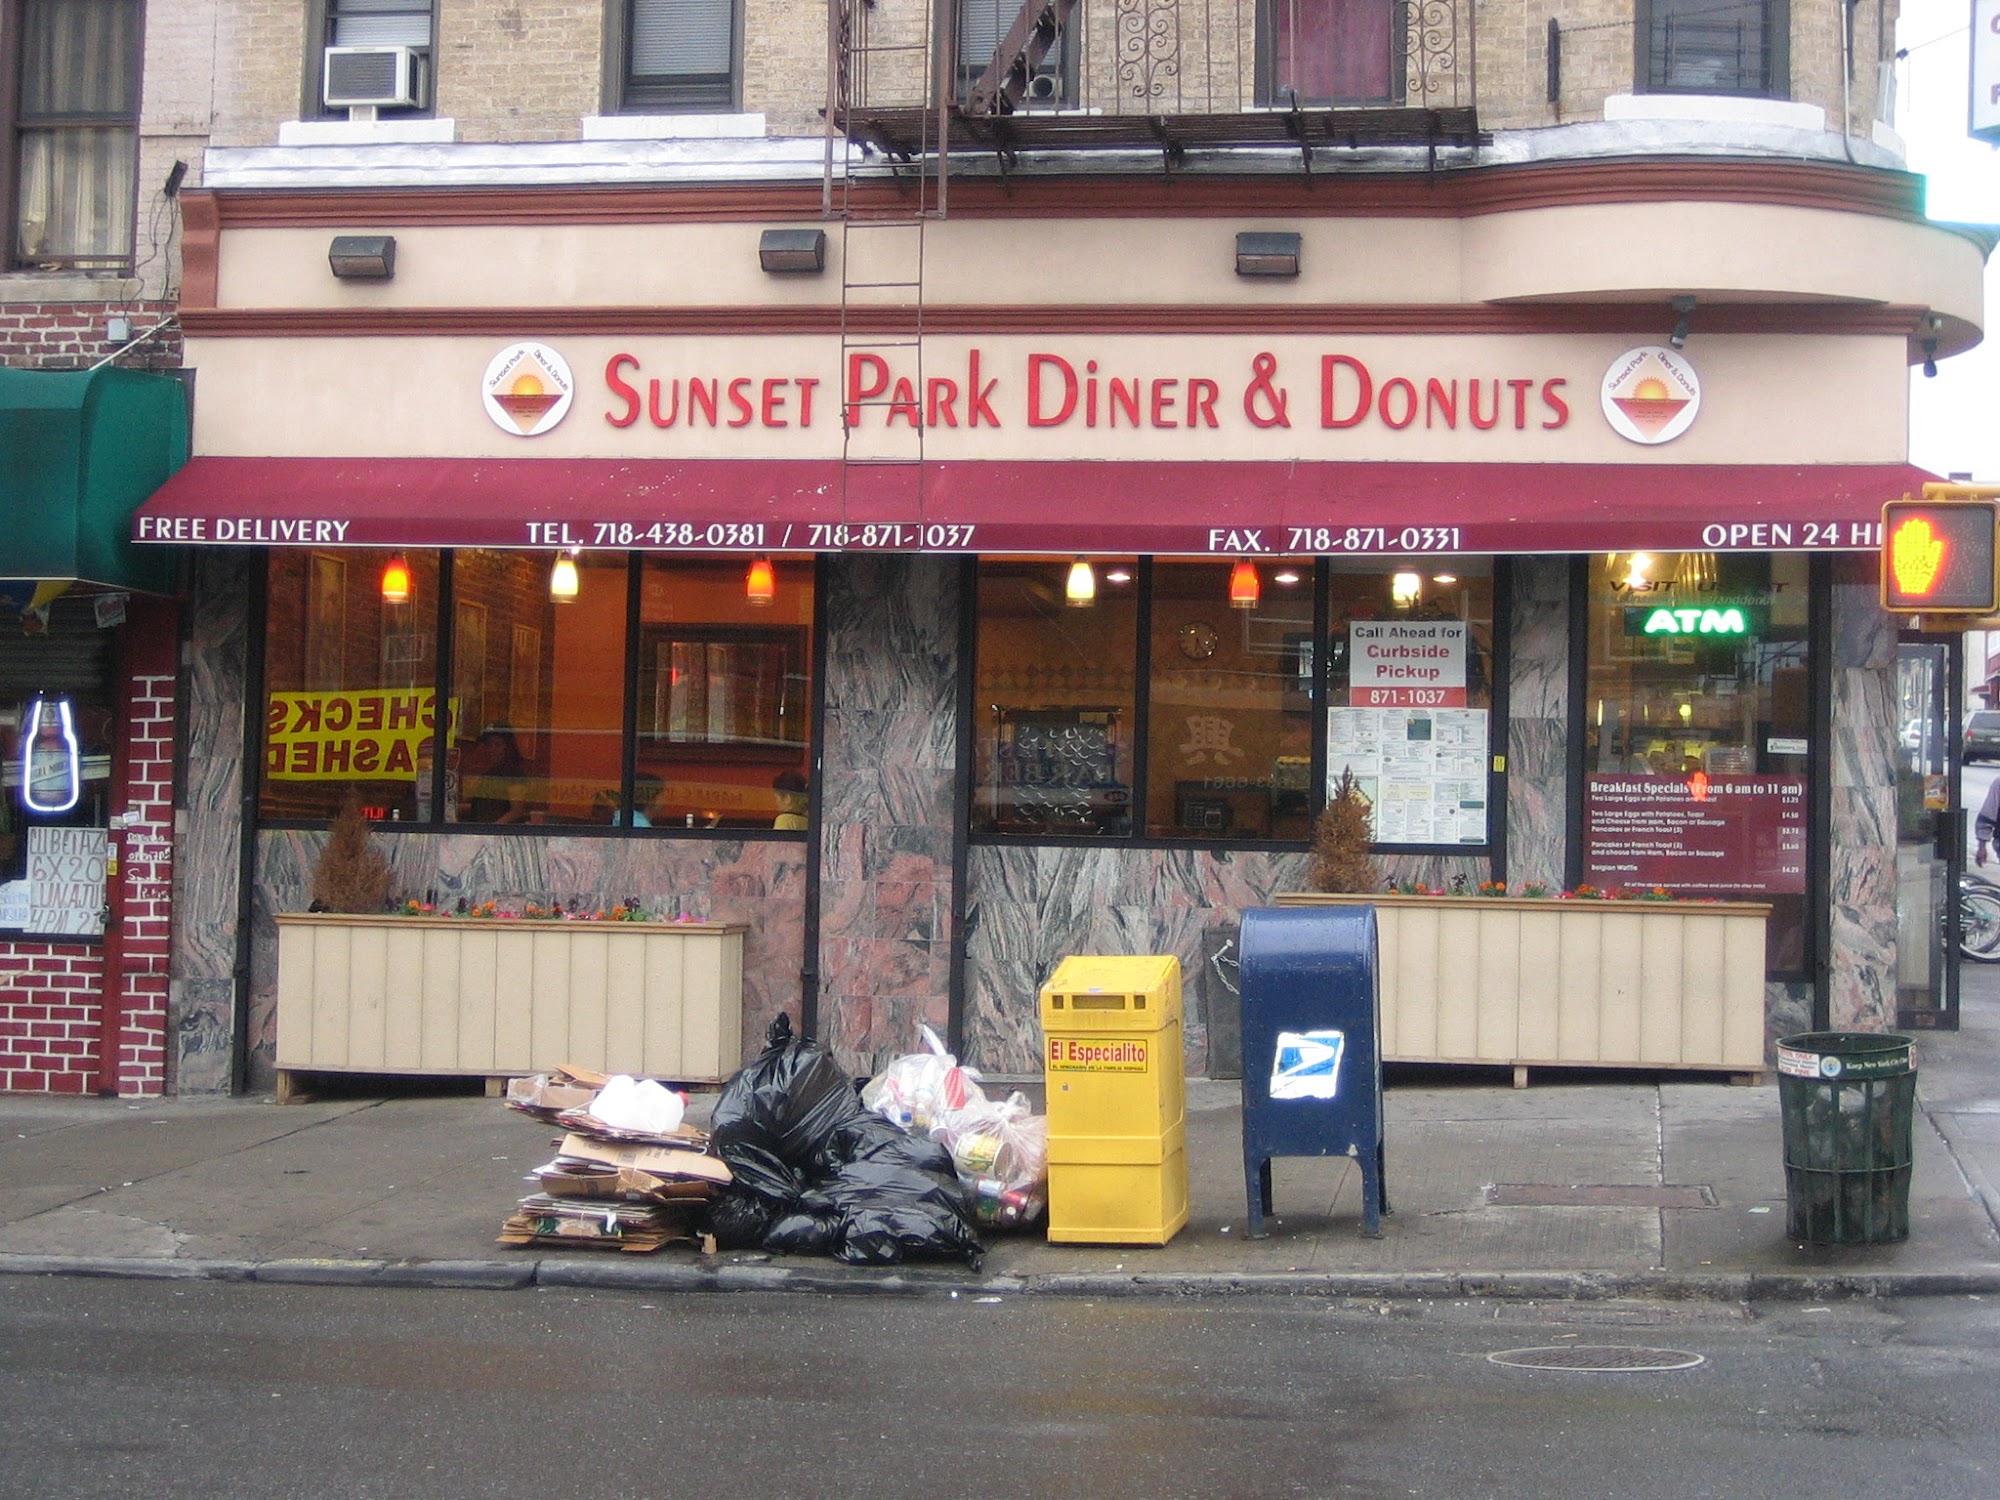 Sunset Park Diner & Donuts